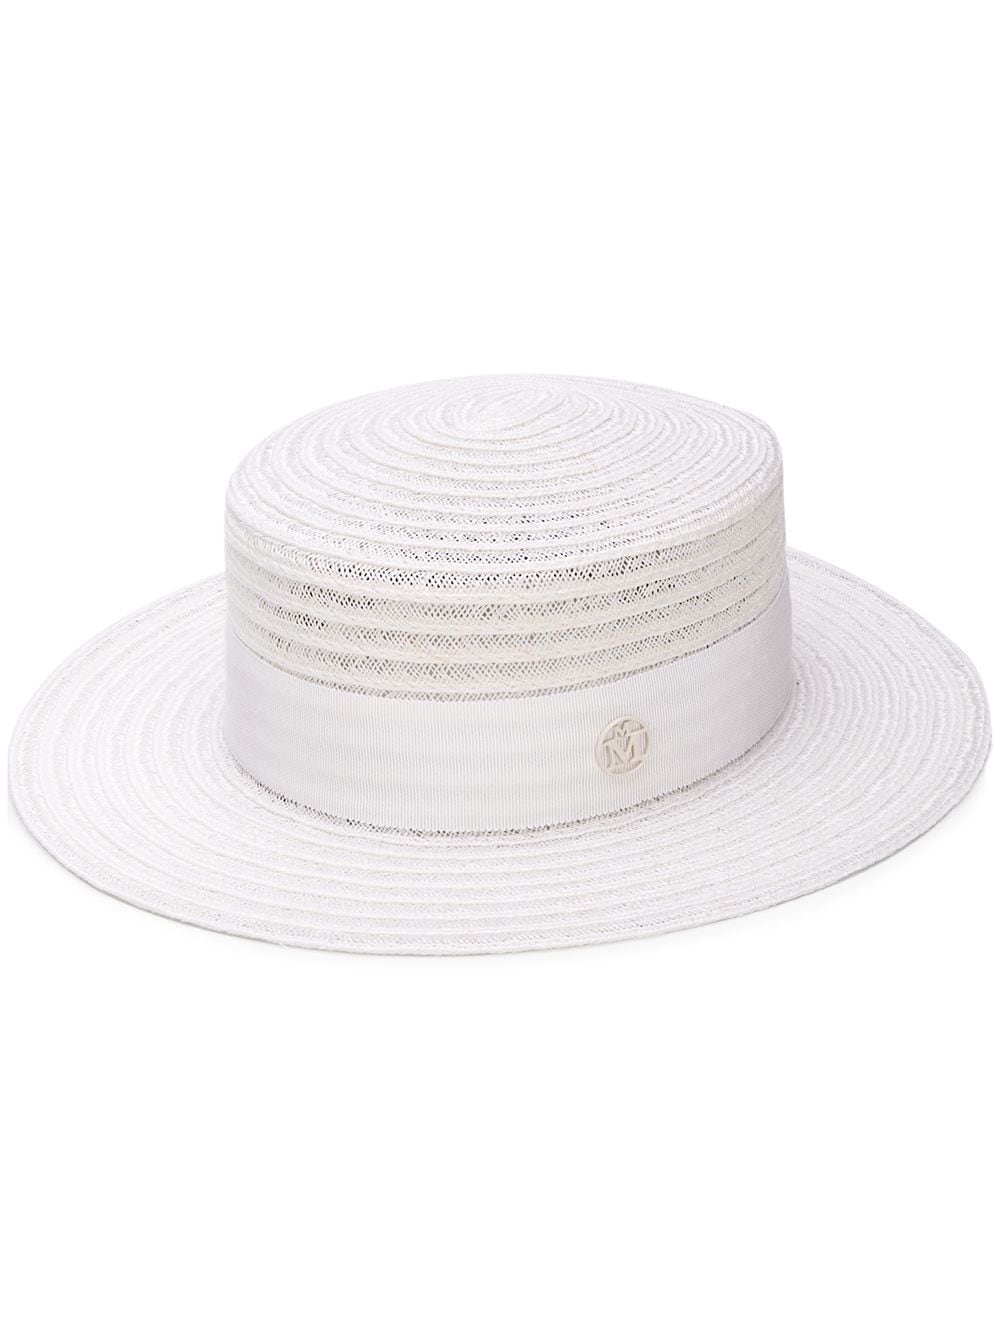 Maison Michel Kiki hat - White von Maison Michel